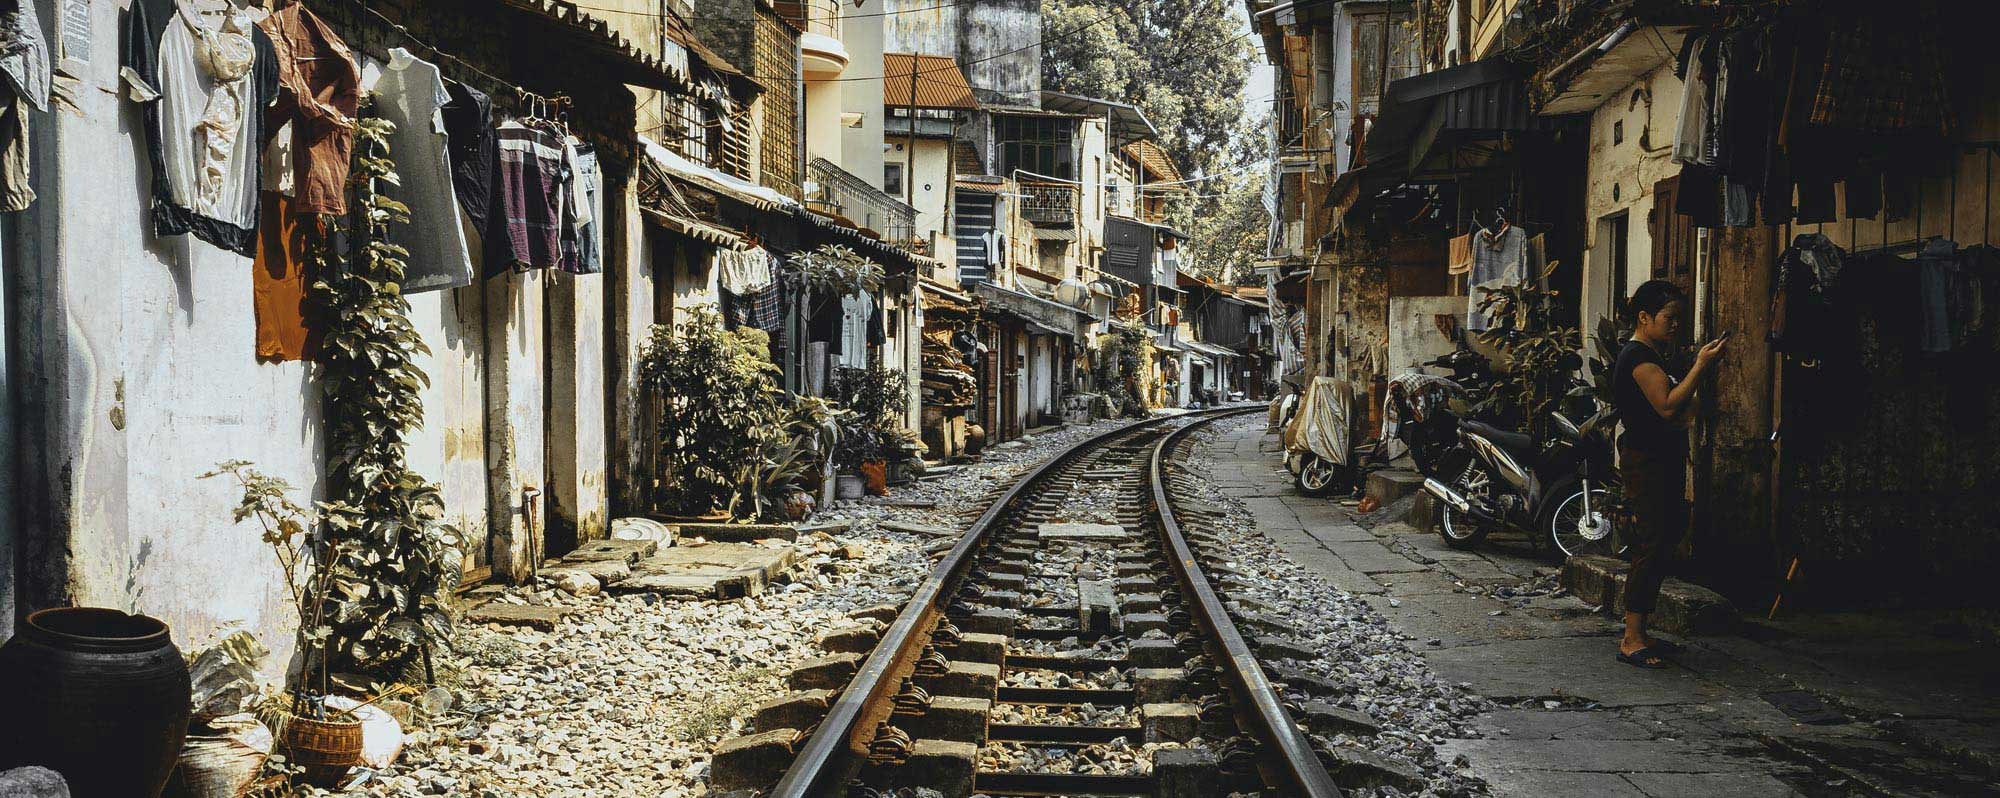 Trainstreet Hanoi Vietnam wereldreis